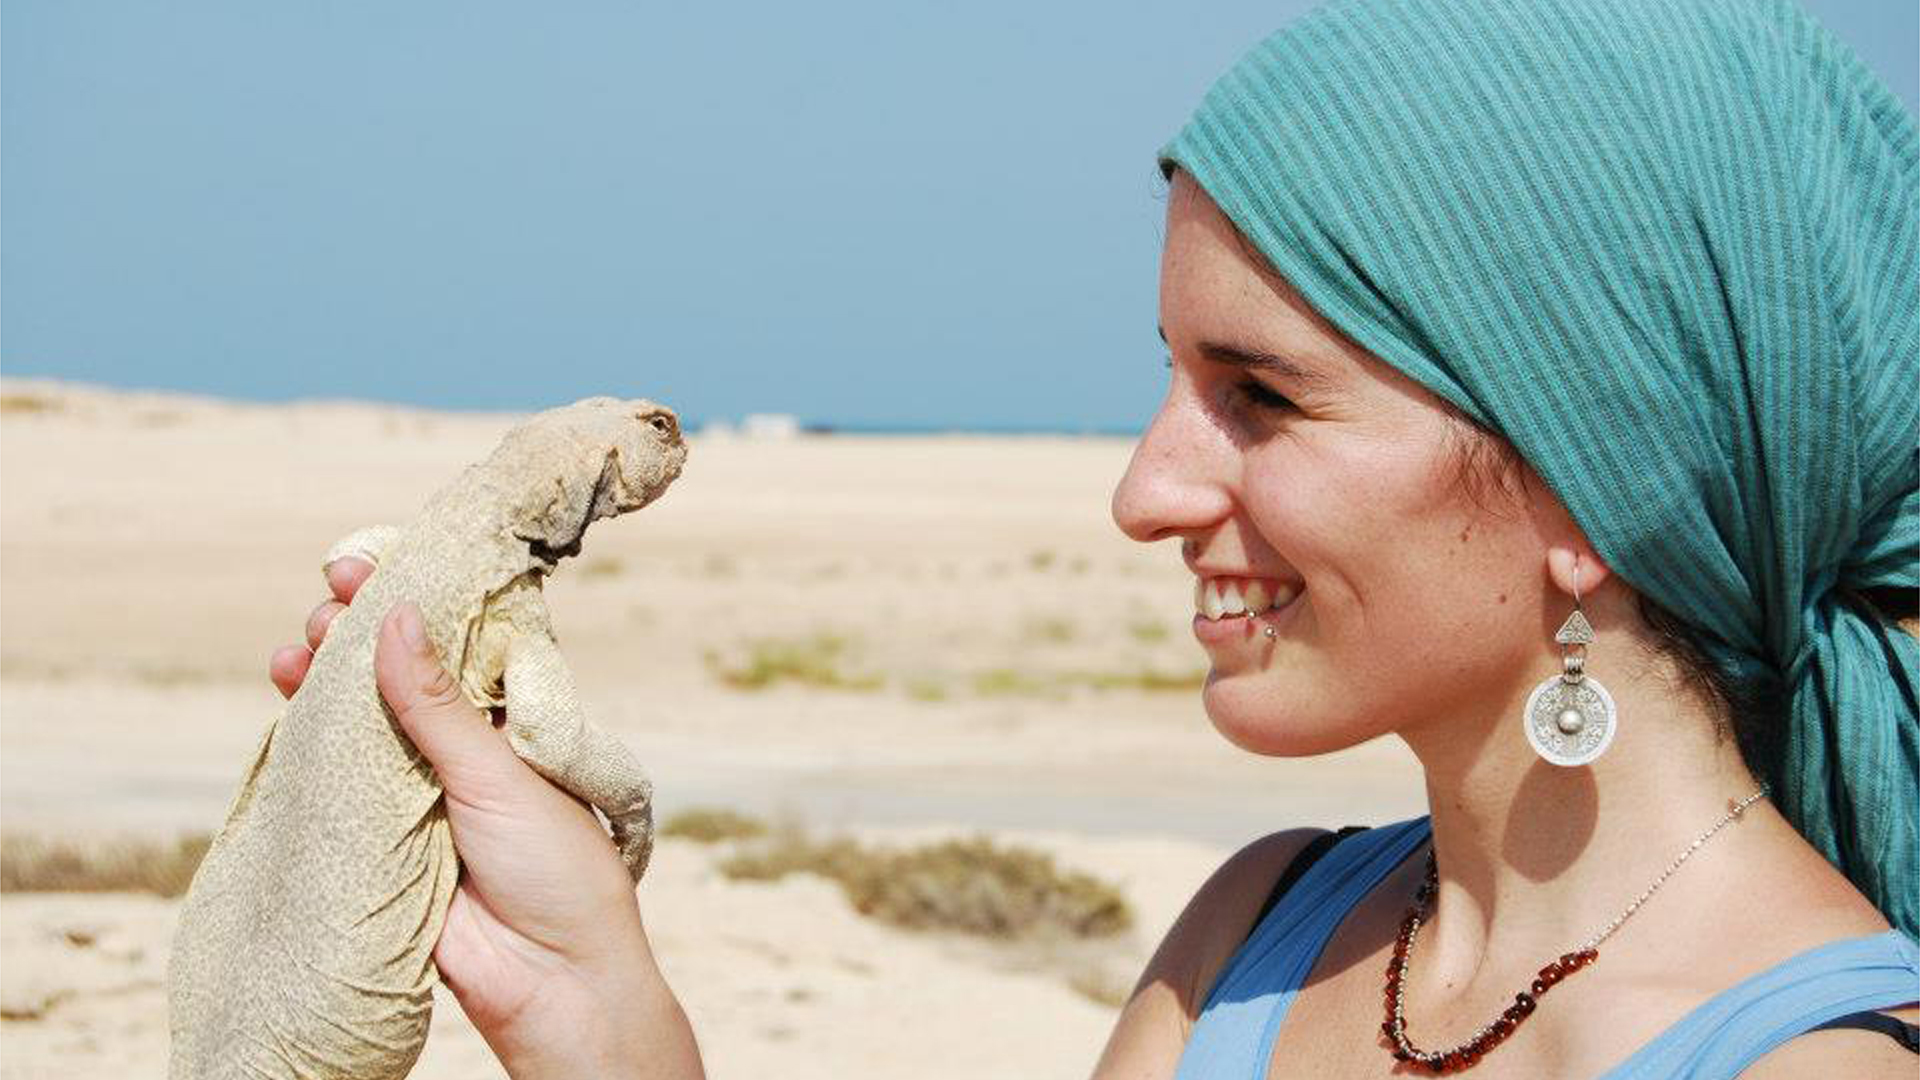 Fotografía de Paloma Mas Peinado junto a un lagarto del desierto en Qatar.